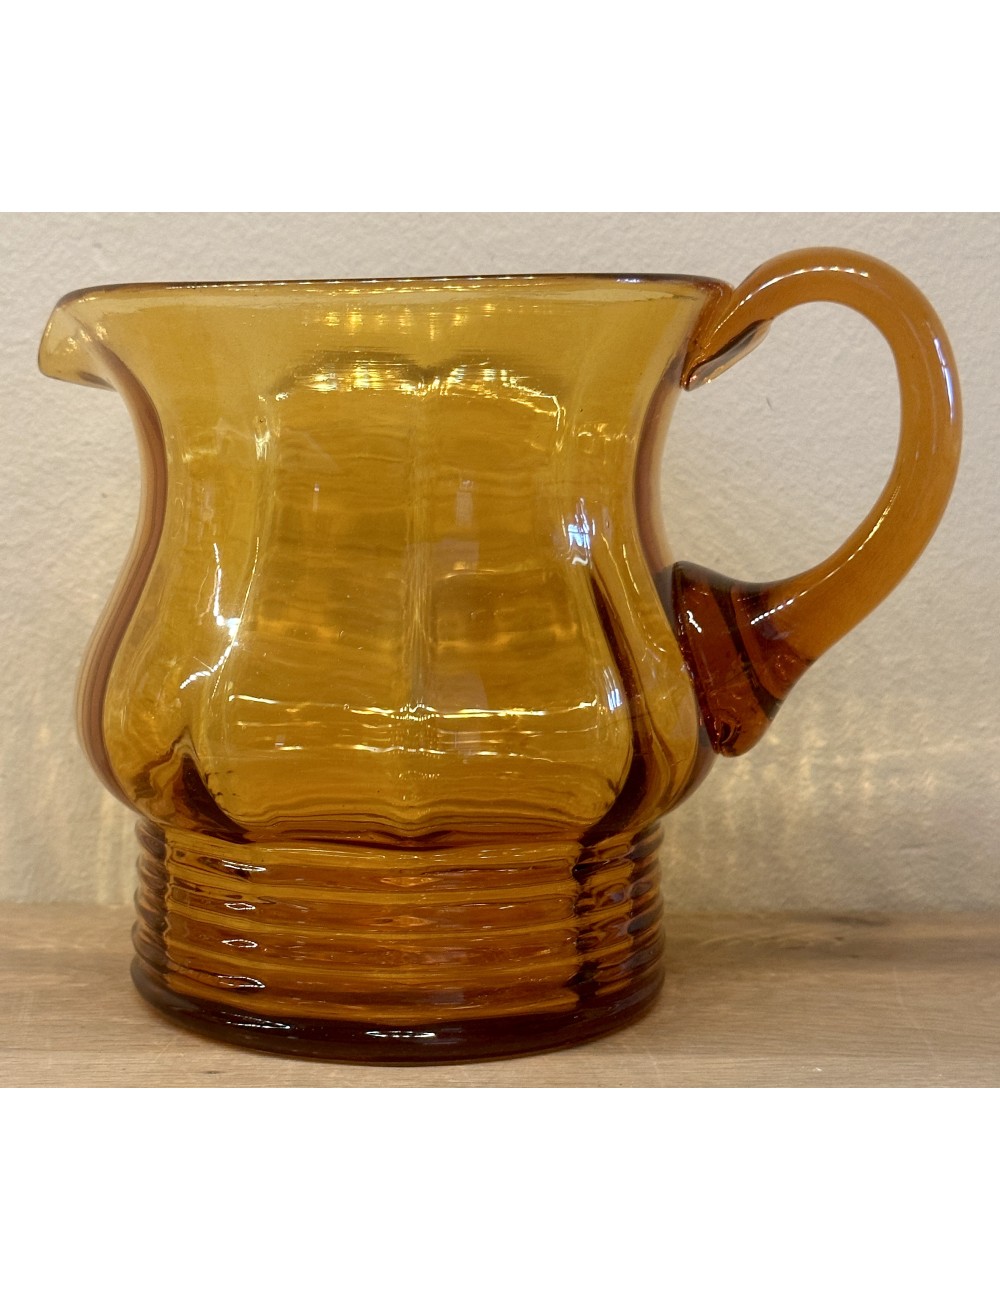 Jug / Water jug / Juice jug - made of brown glass